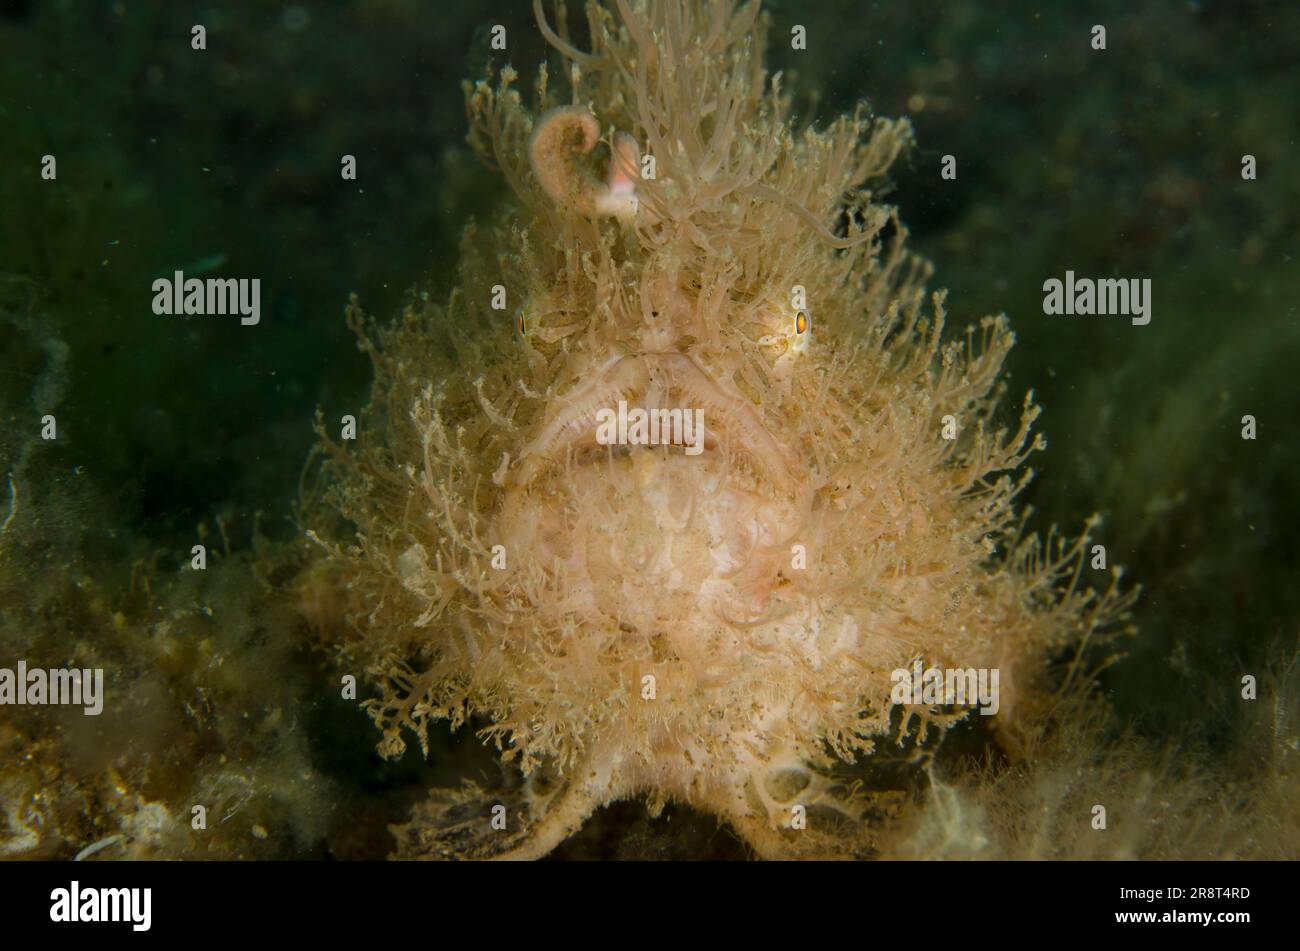 Pesce gatto striato, Antennarius striatus, con richiamo simile a un verme, sito di immersione di Ghost Bay, Amed, Karangasem Regency, Bali, Indonesia, Oceano Indiano Foto Stock